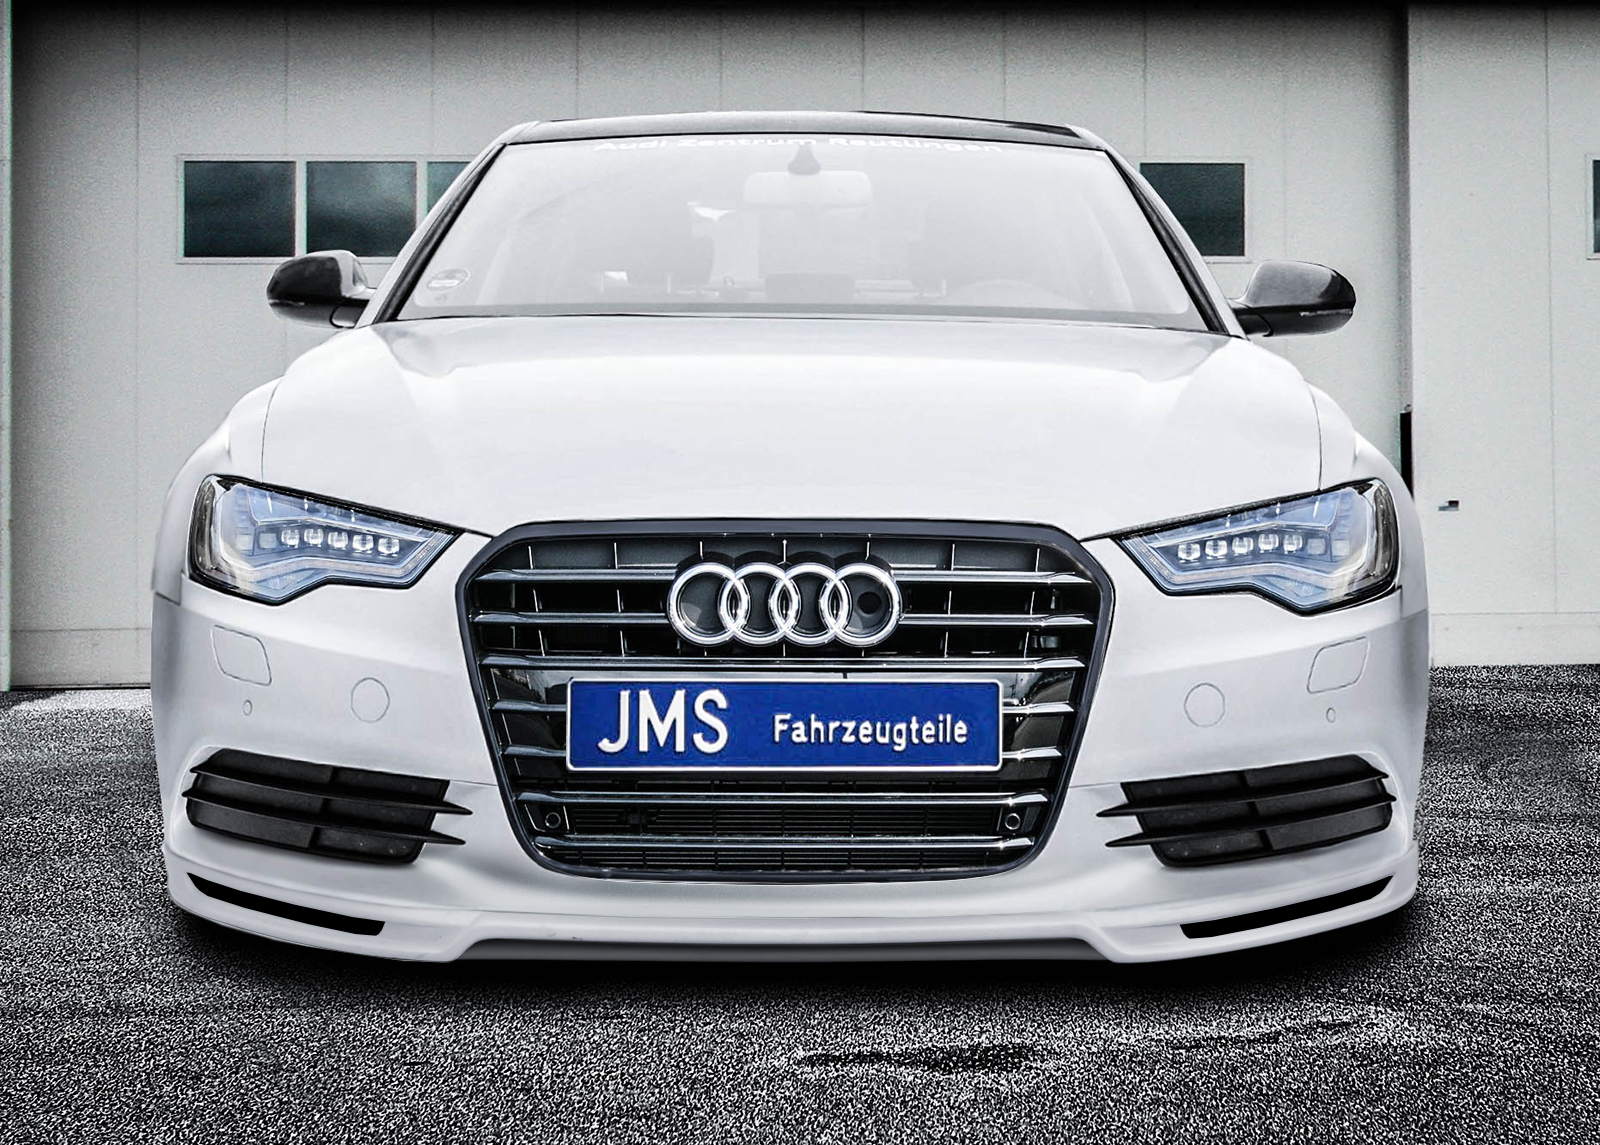 Audi A6 4G Styling & Tuning von JMS Fahrzeugteile GmbH, JMS - Fahrzeugteile  GmbH, Story - lifePR